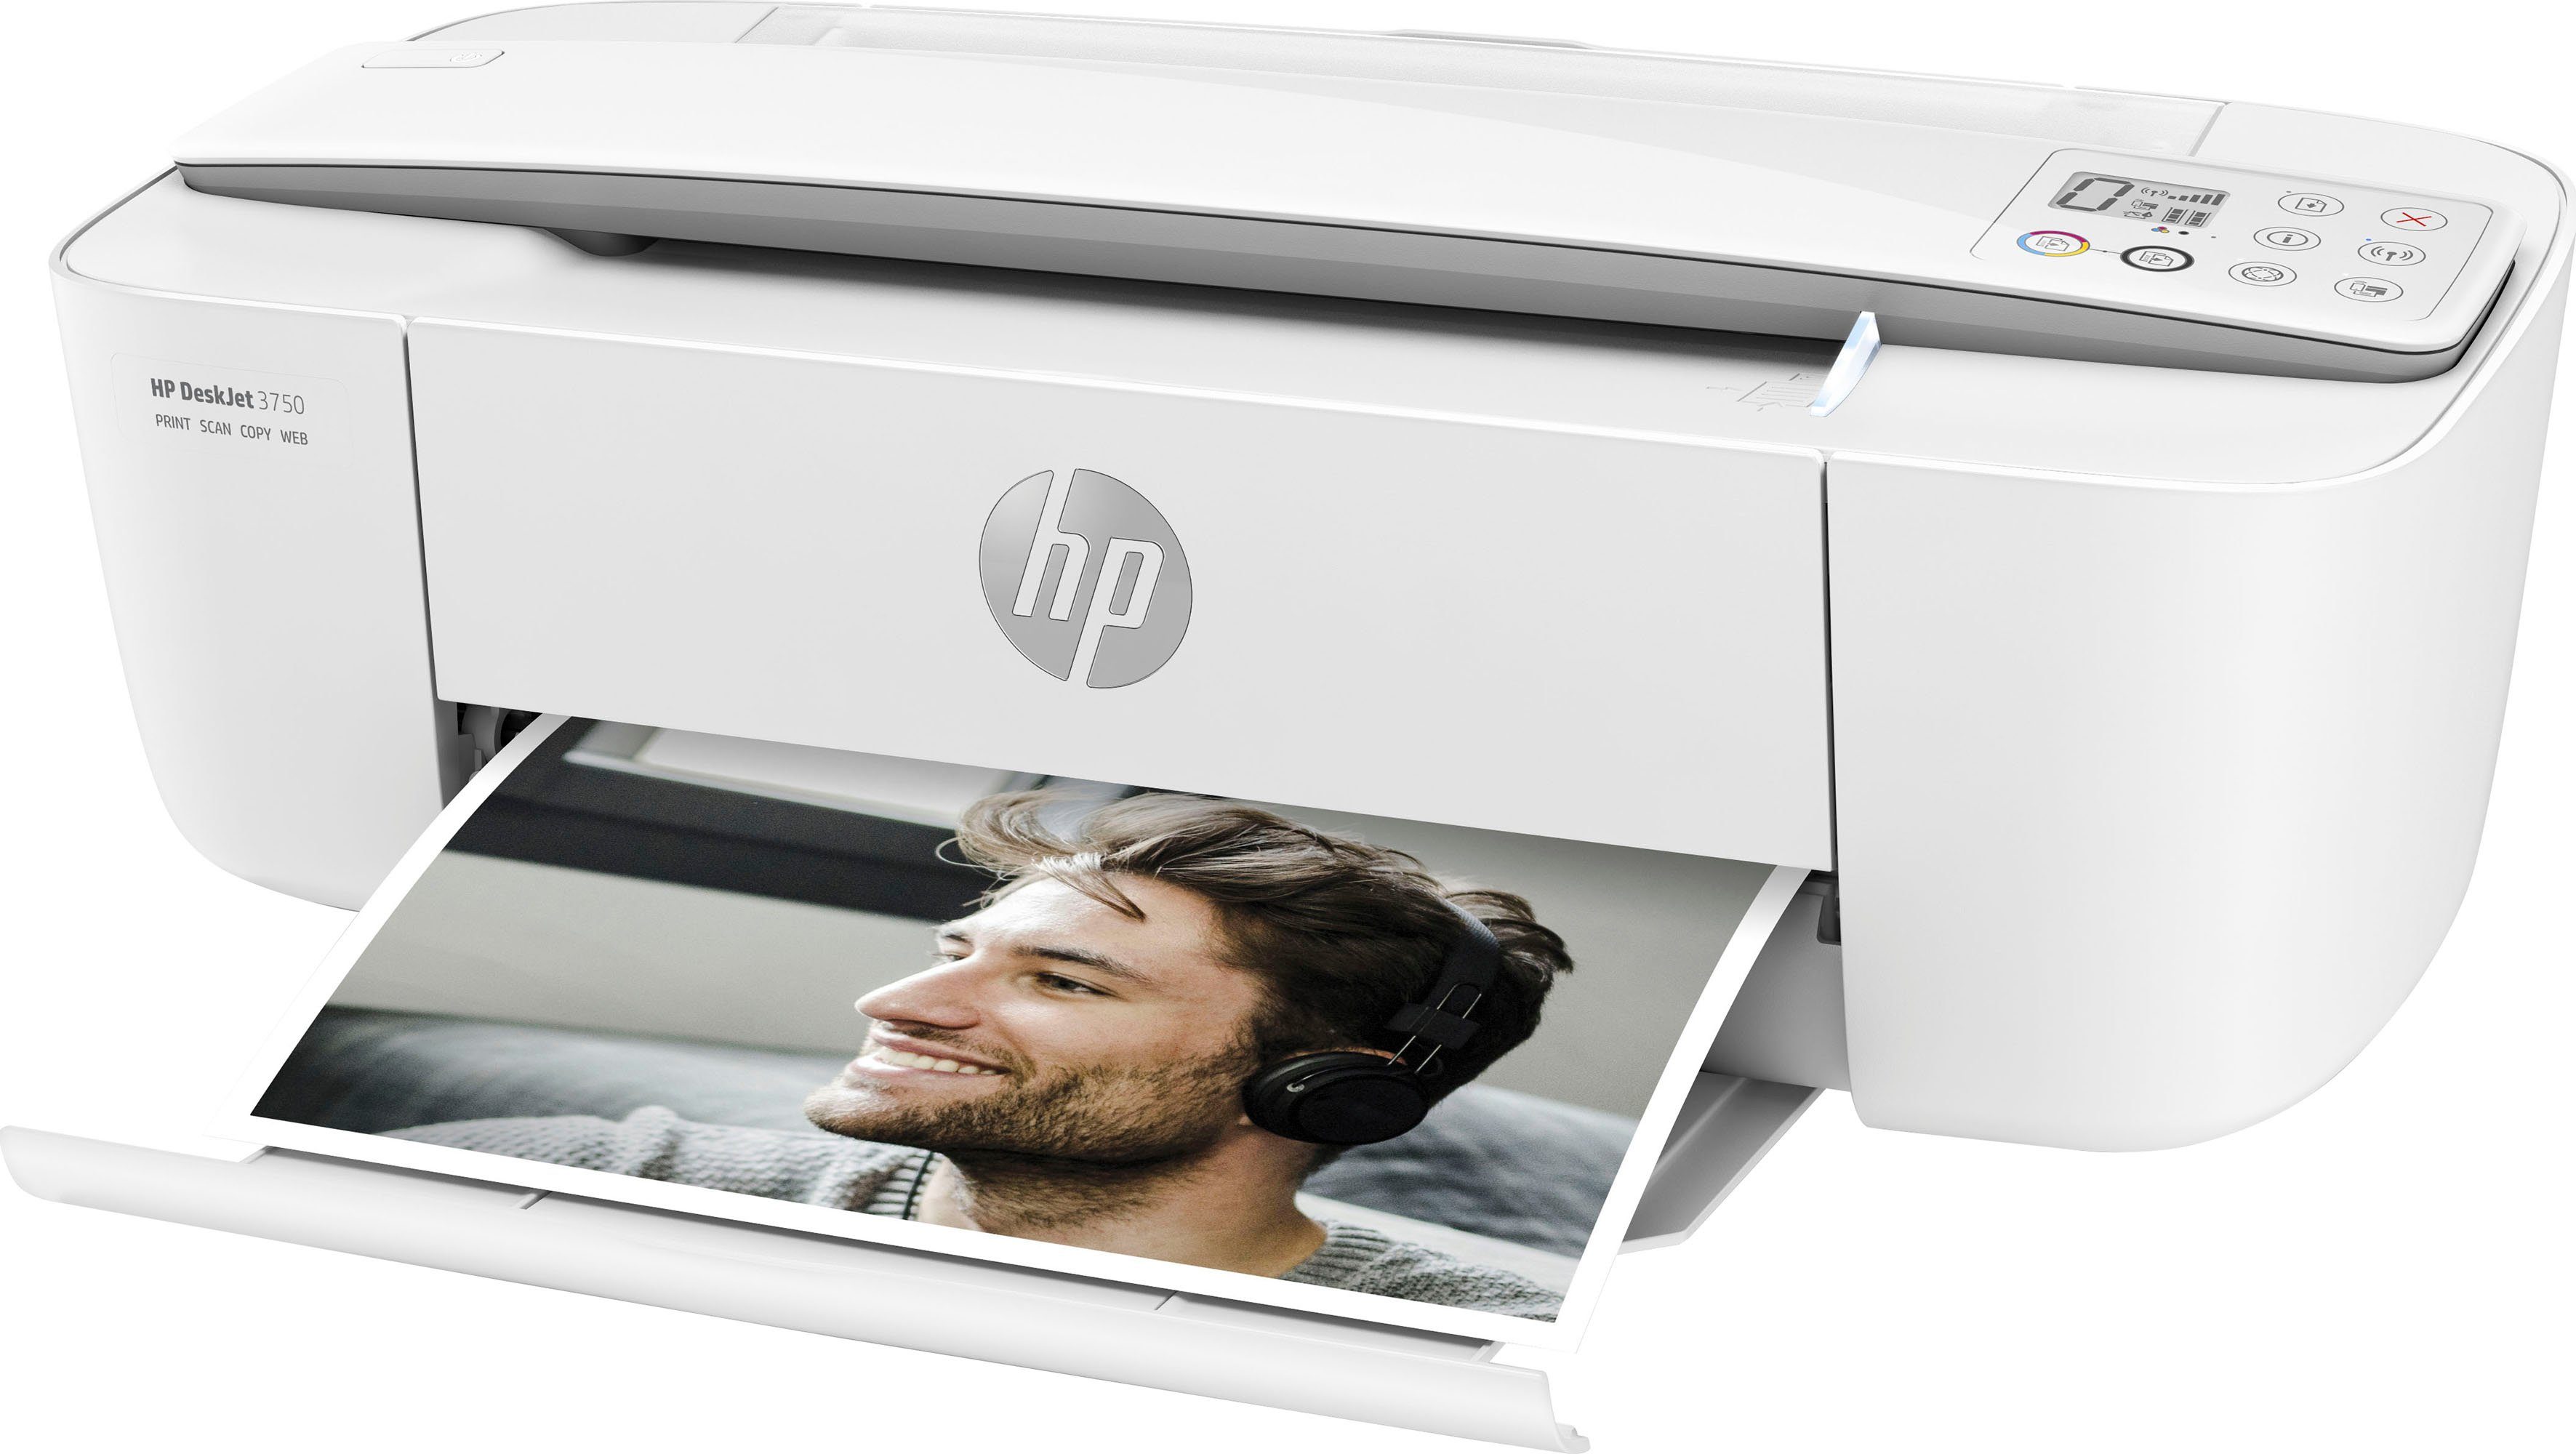 3750 (WLAN Multifunktionsdrucker, Drucker Instant (Wi-Fi), HP+ DeskJet Ink HP kompatibel)